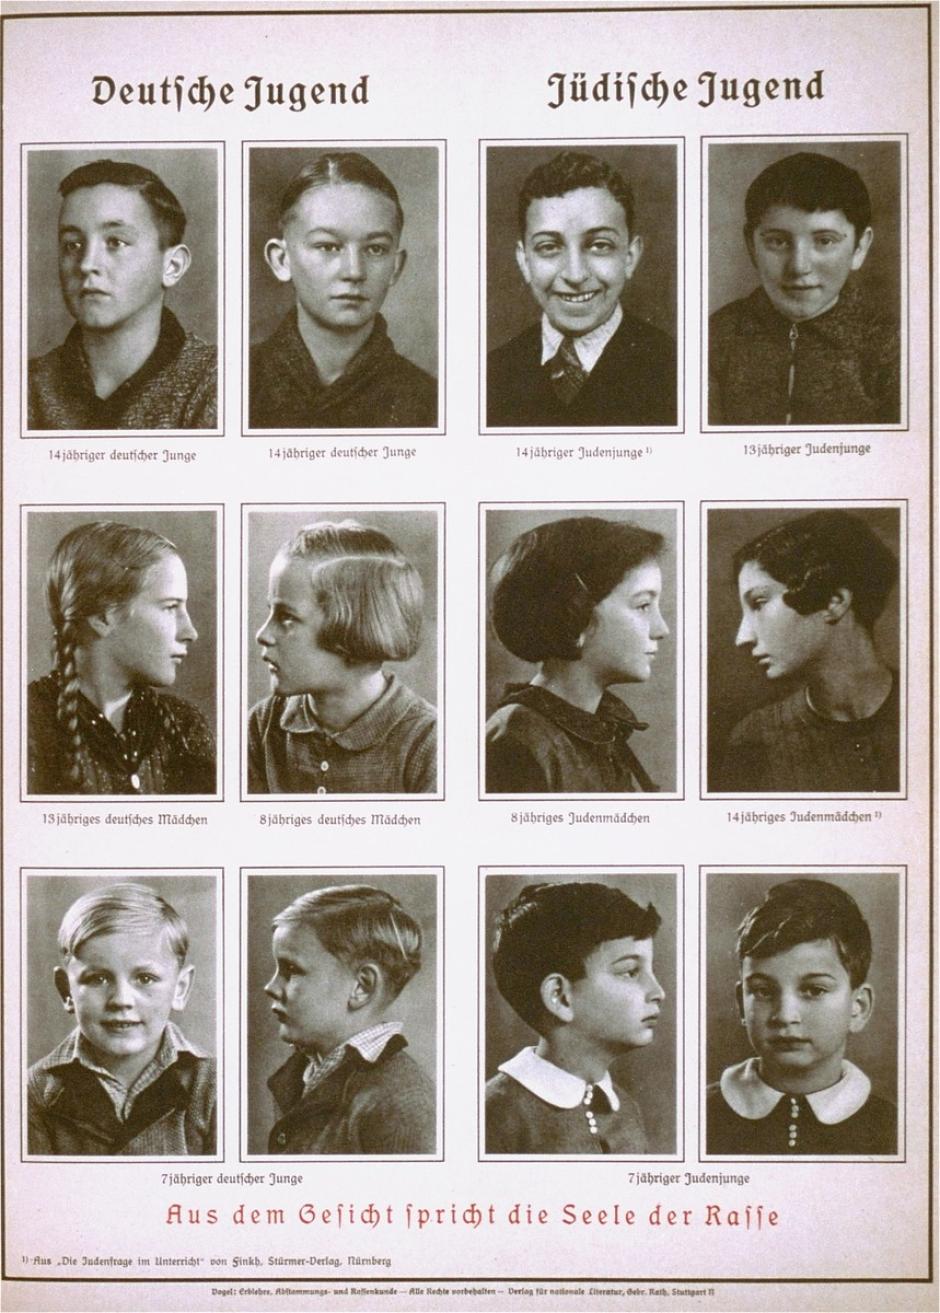 Esta ilustración racista de 1938 compara a la “juventud alemana” con la “juventud judía”: lleva el título “Por la cara habla el alma de la raza”